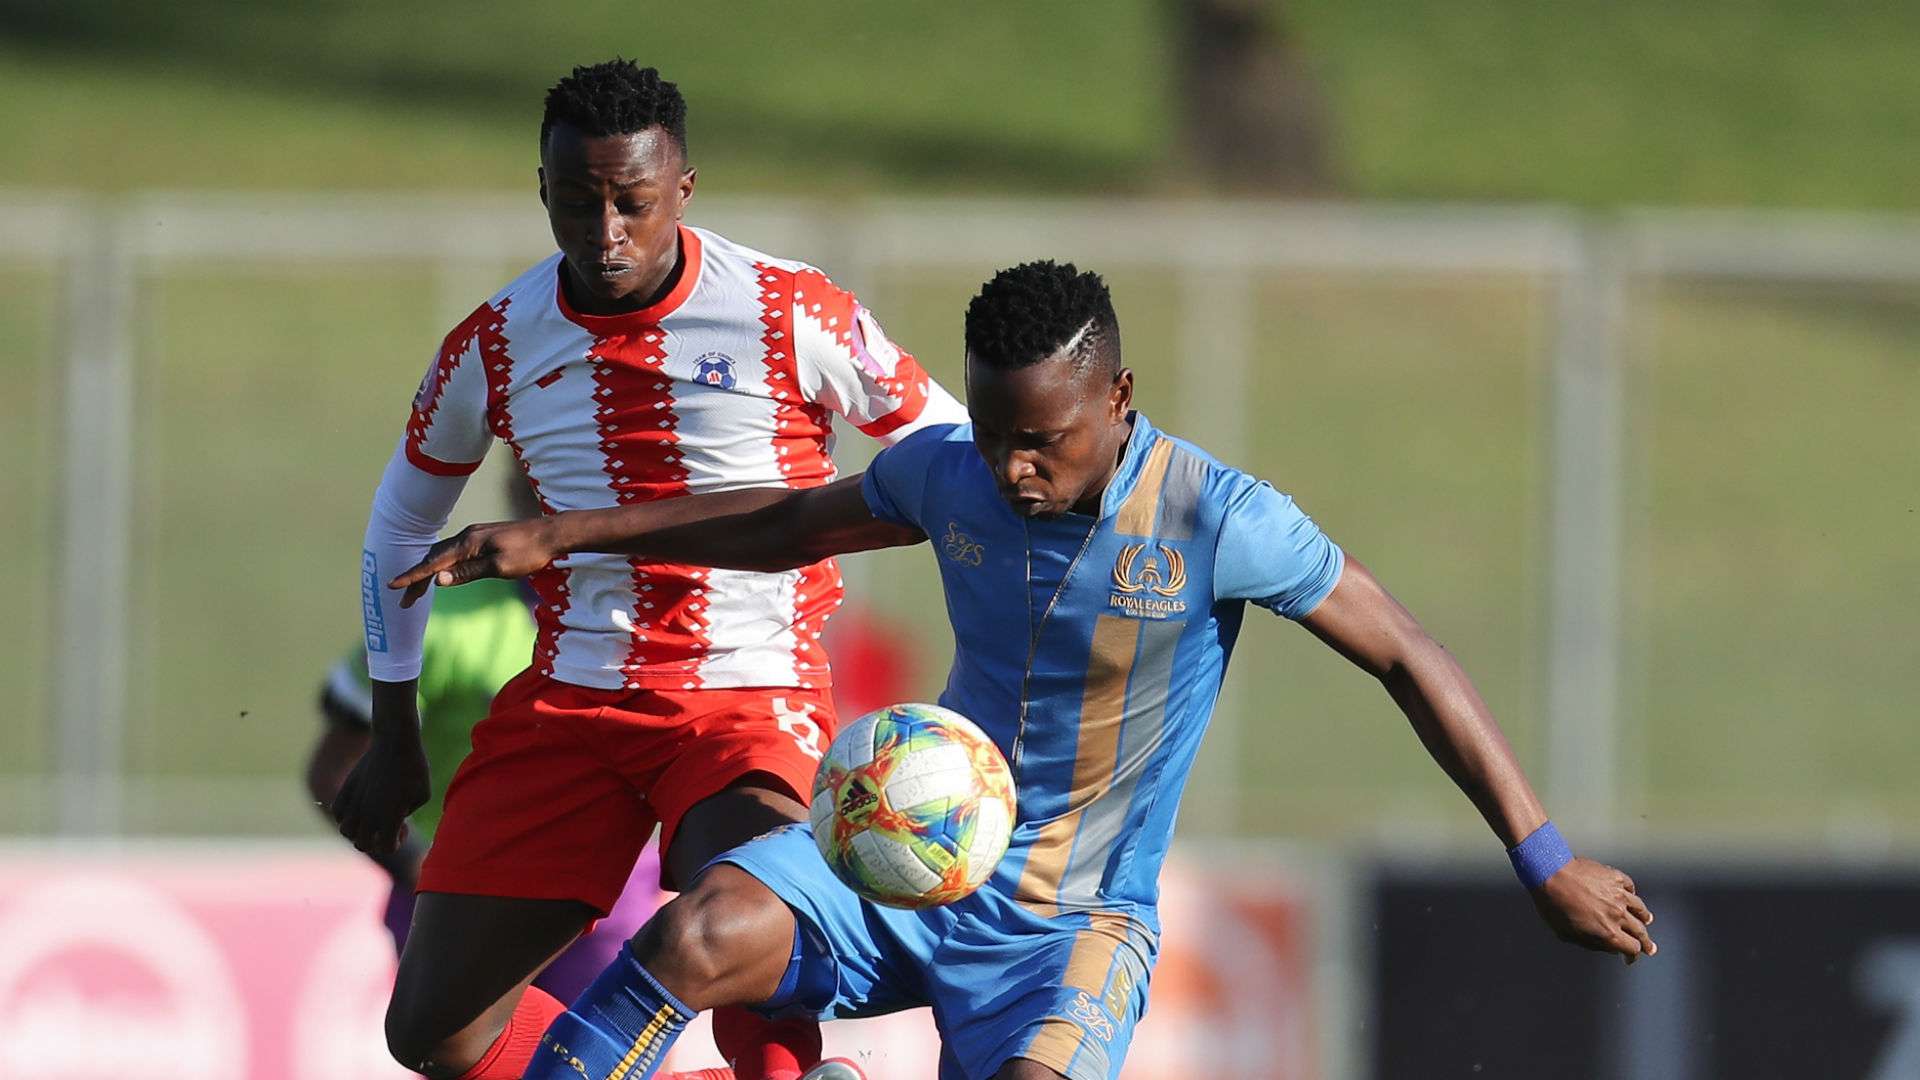 Mbulelo Wambi of Royal Eagles and Siphesihle Ndlovu of Maritzburg United, May 2019